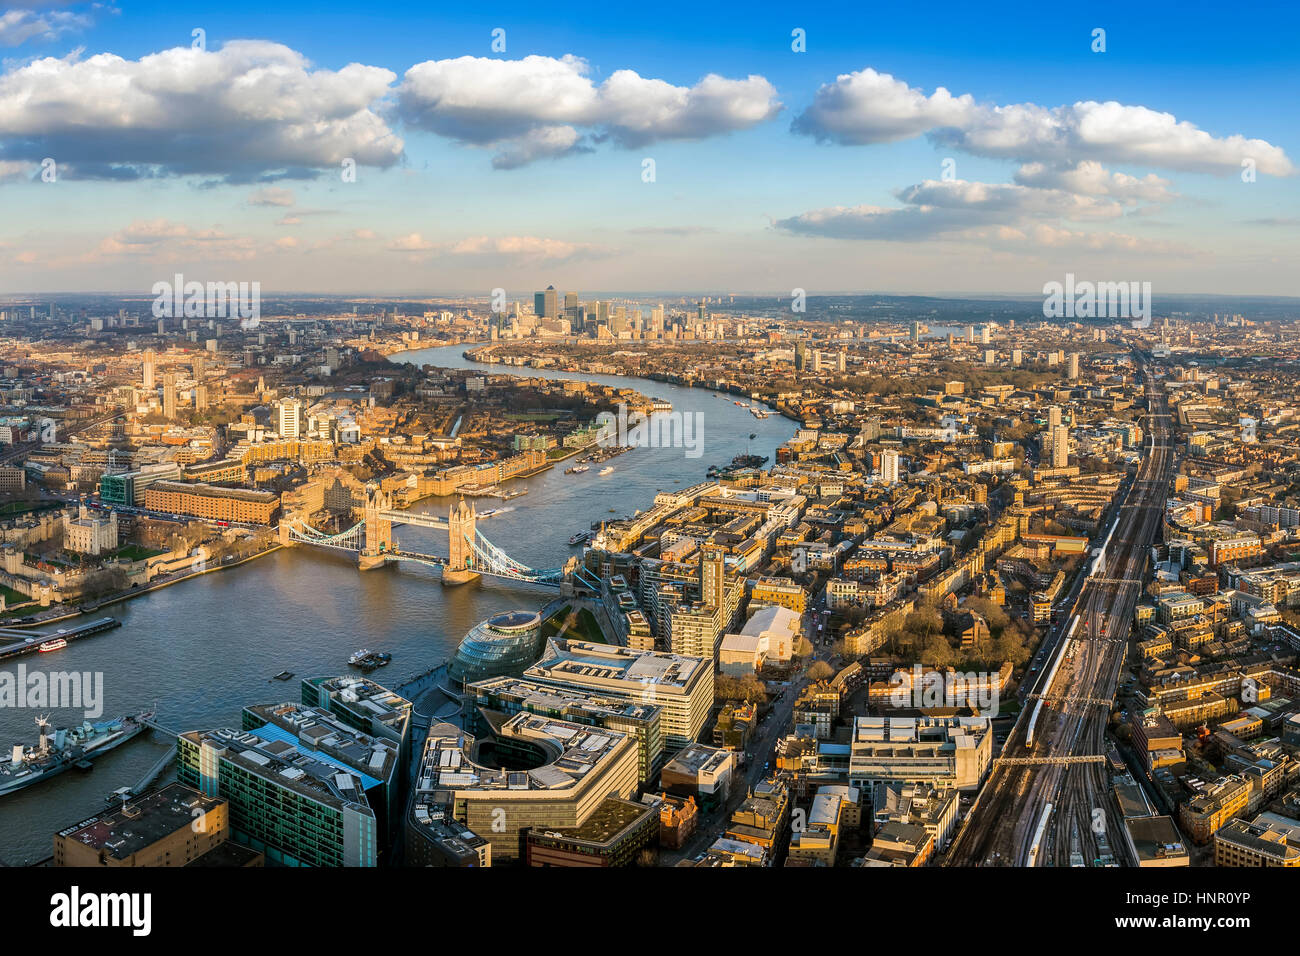 Londra, Inghilterra - panoramica vista aerea di Londra con la famosa torre e il Tower Bridge e skyscrapesr di Canary Wharf in background Foto Stock